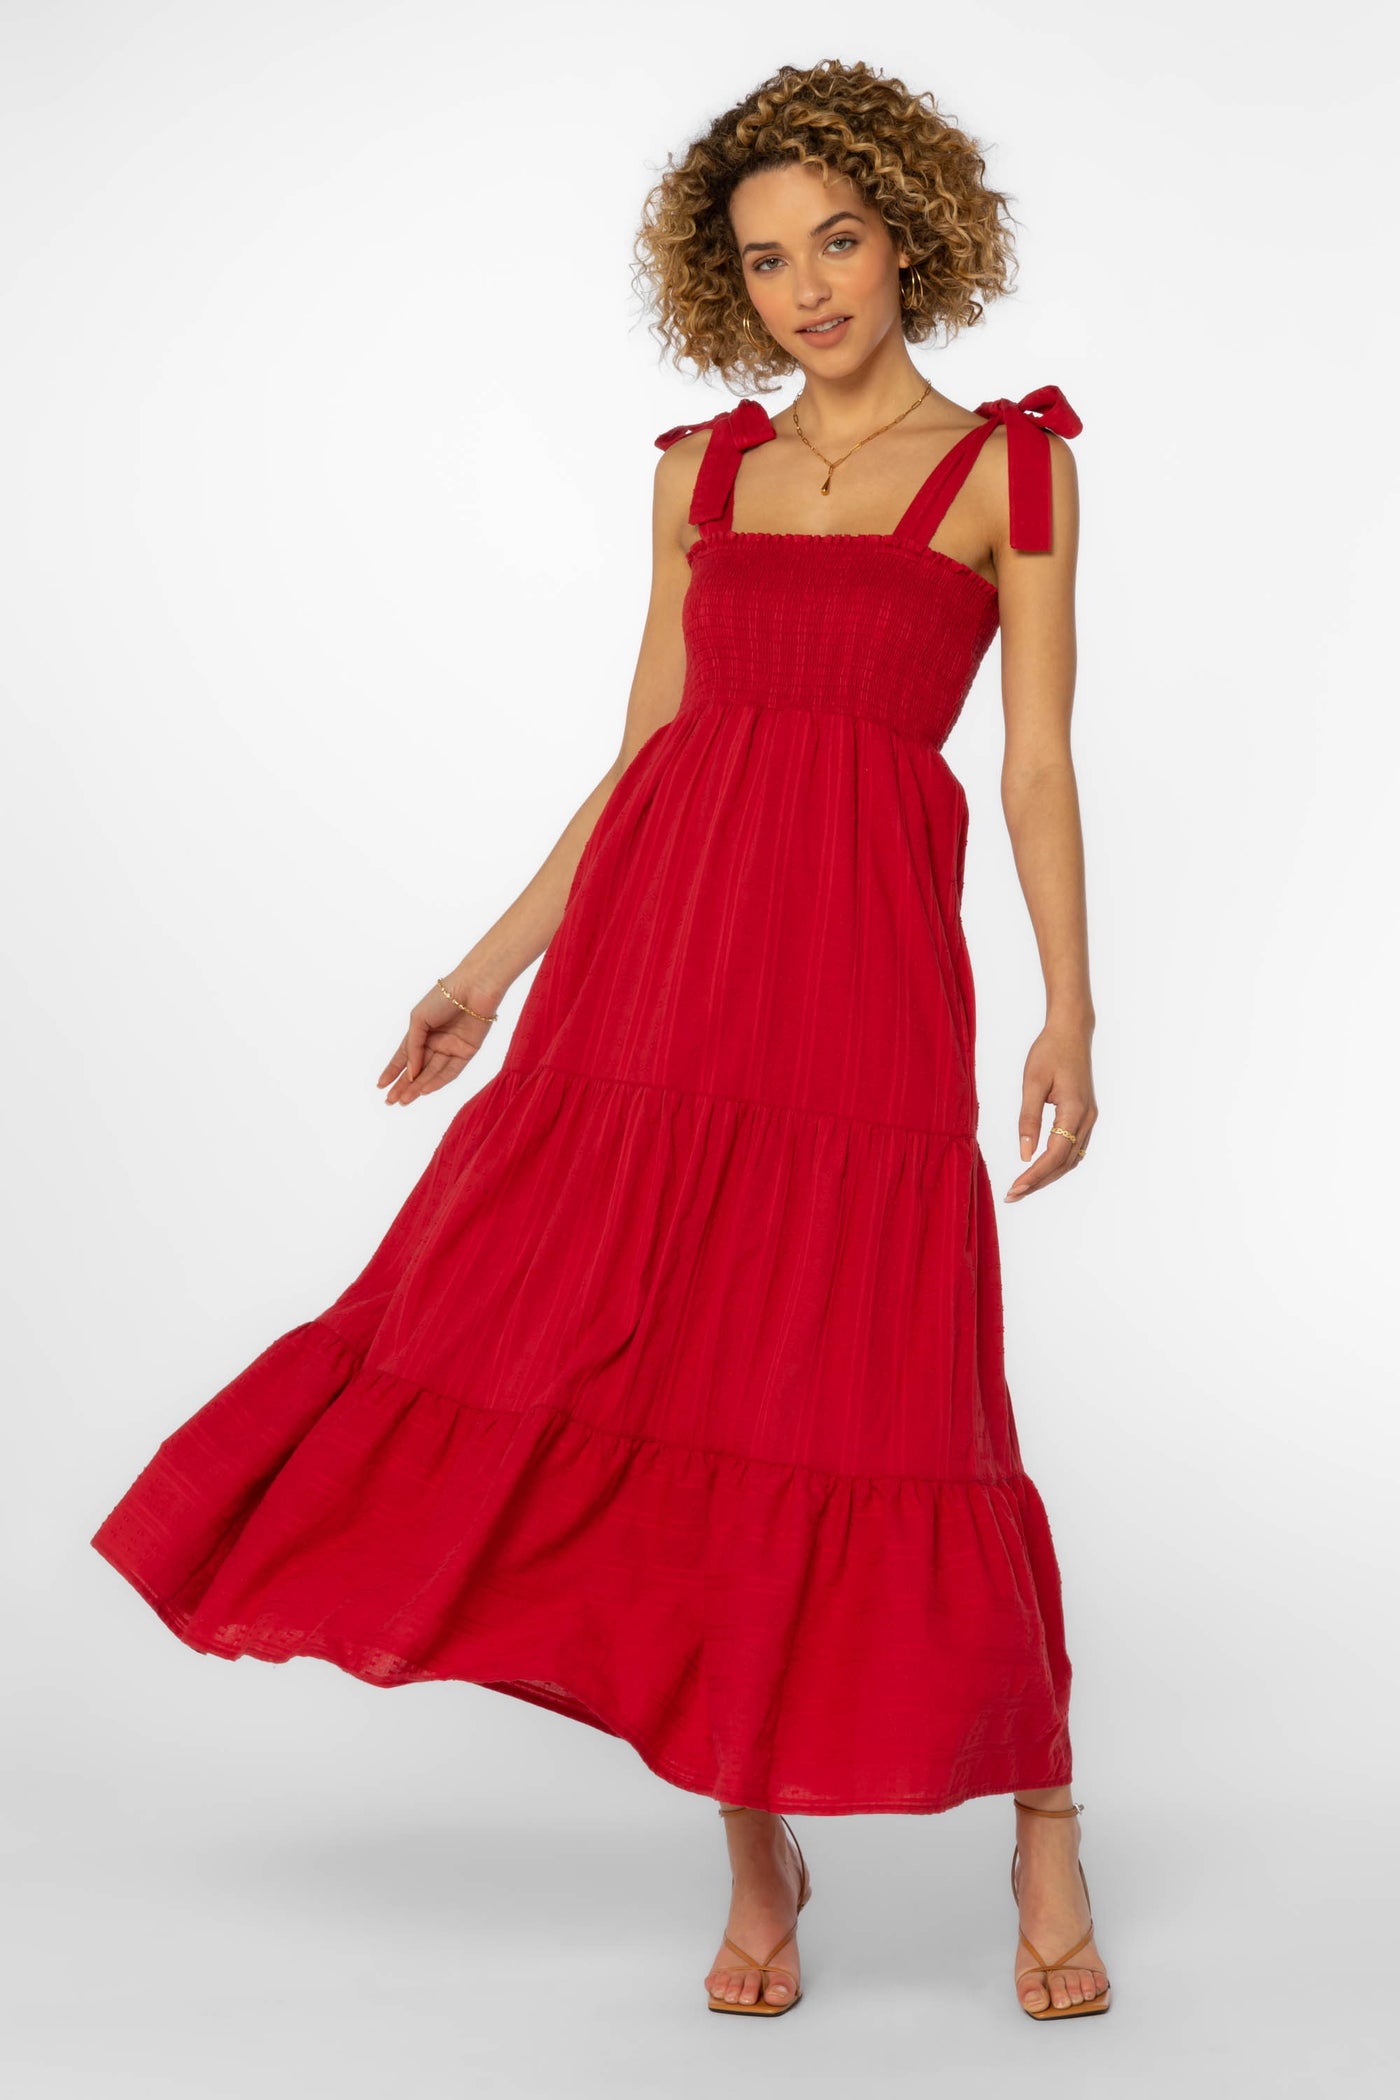 Kathy Red Dress - Dresses - Velvet Heart Clothing